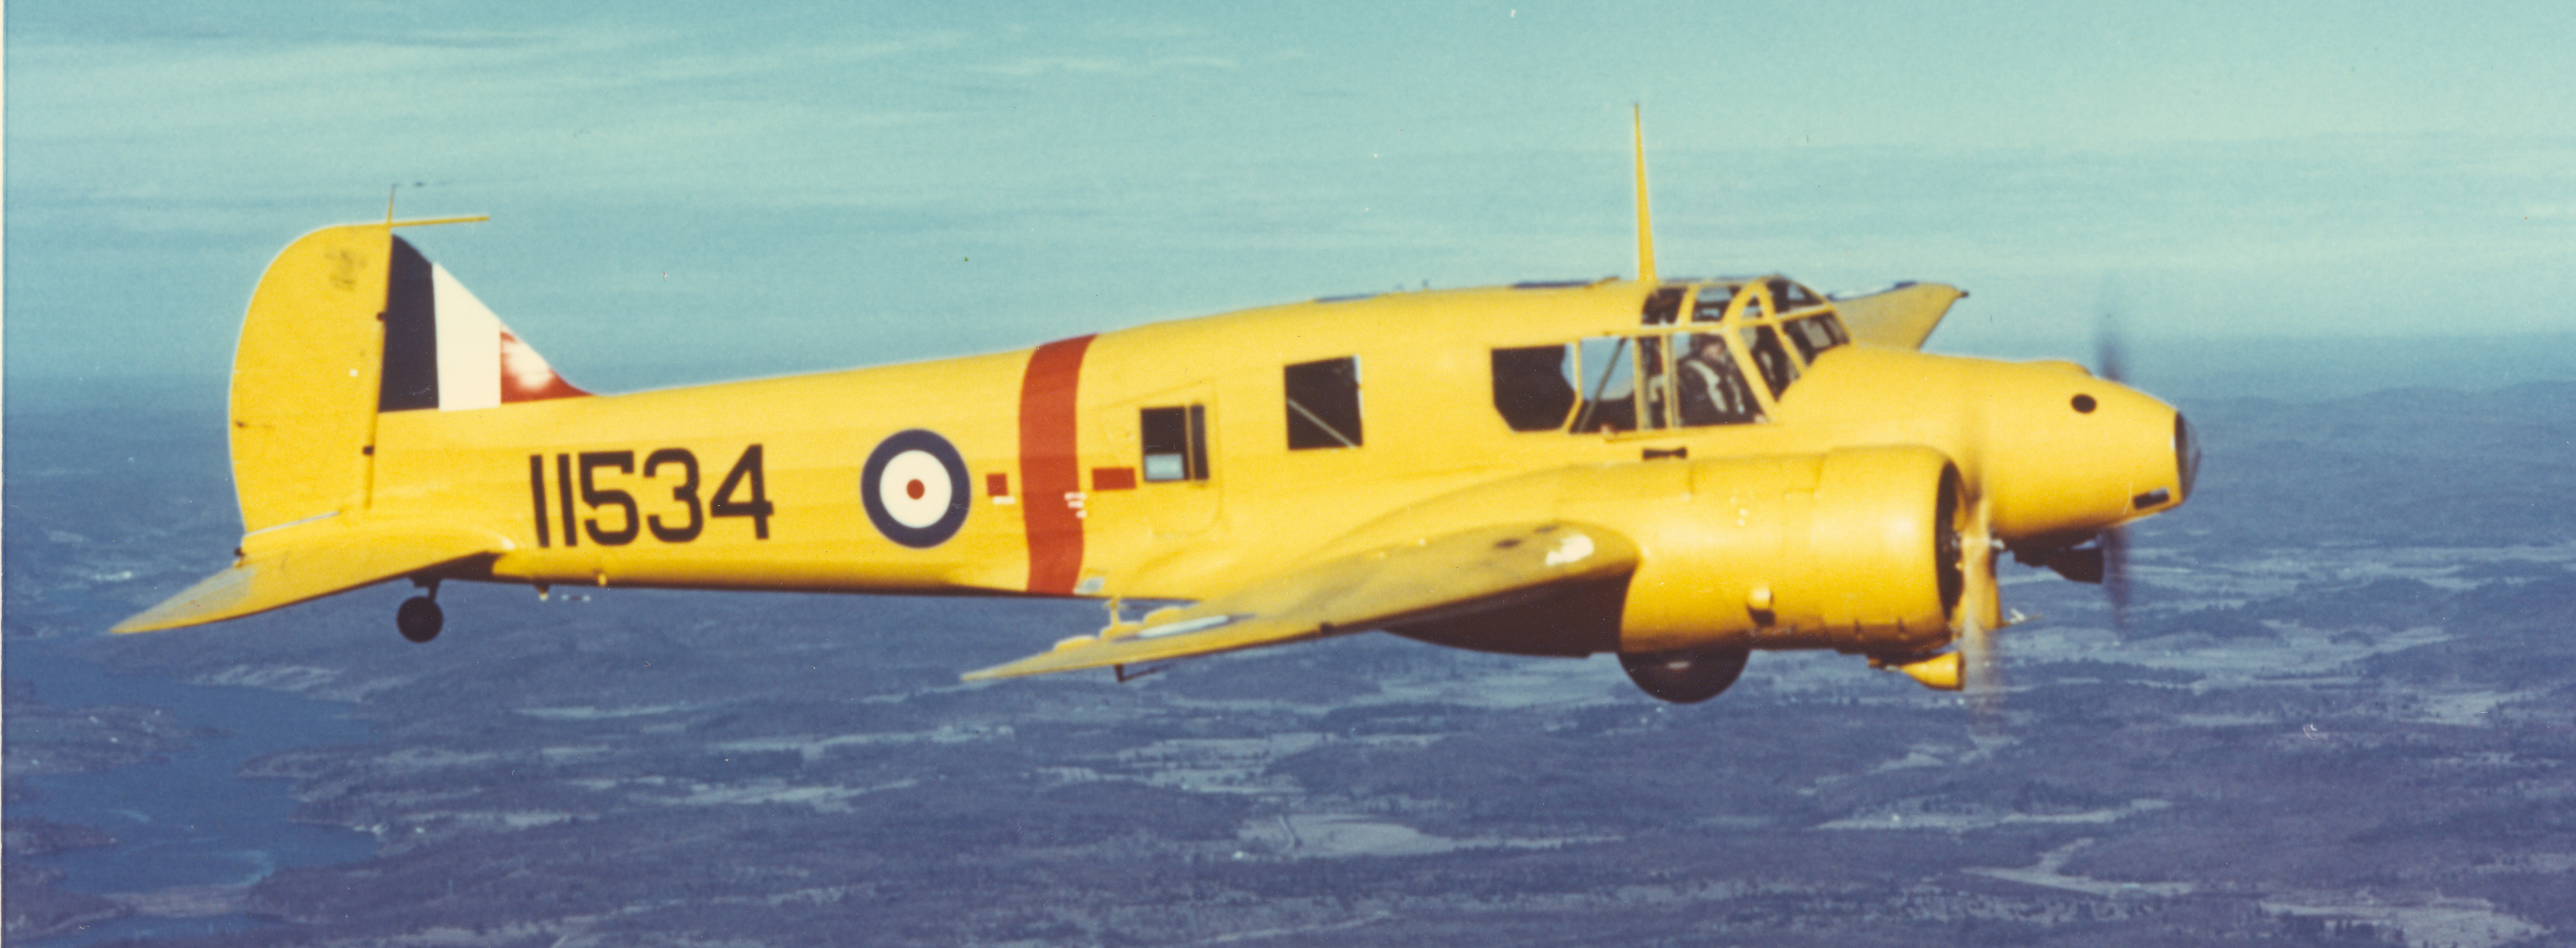 Un des premiers modèles d’Anson utilisé par l’Aviation royale canadienne dans le cadre du Programme d’entraînement aérien du Commonwealth britannique (PEACB). La plupart des avions affectés au PEACB portaient la couleur jaune, réservée aux avions-écoles. PHOTO : Fournie par T.F.J. Leversedge